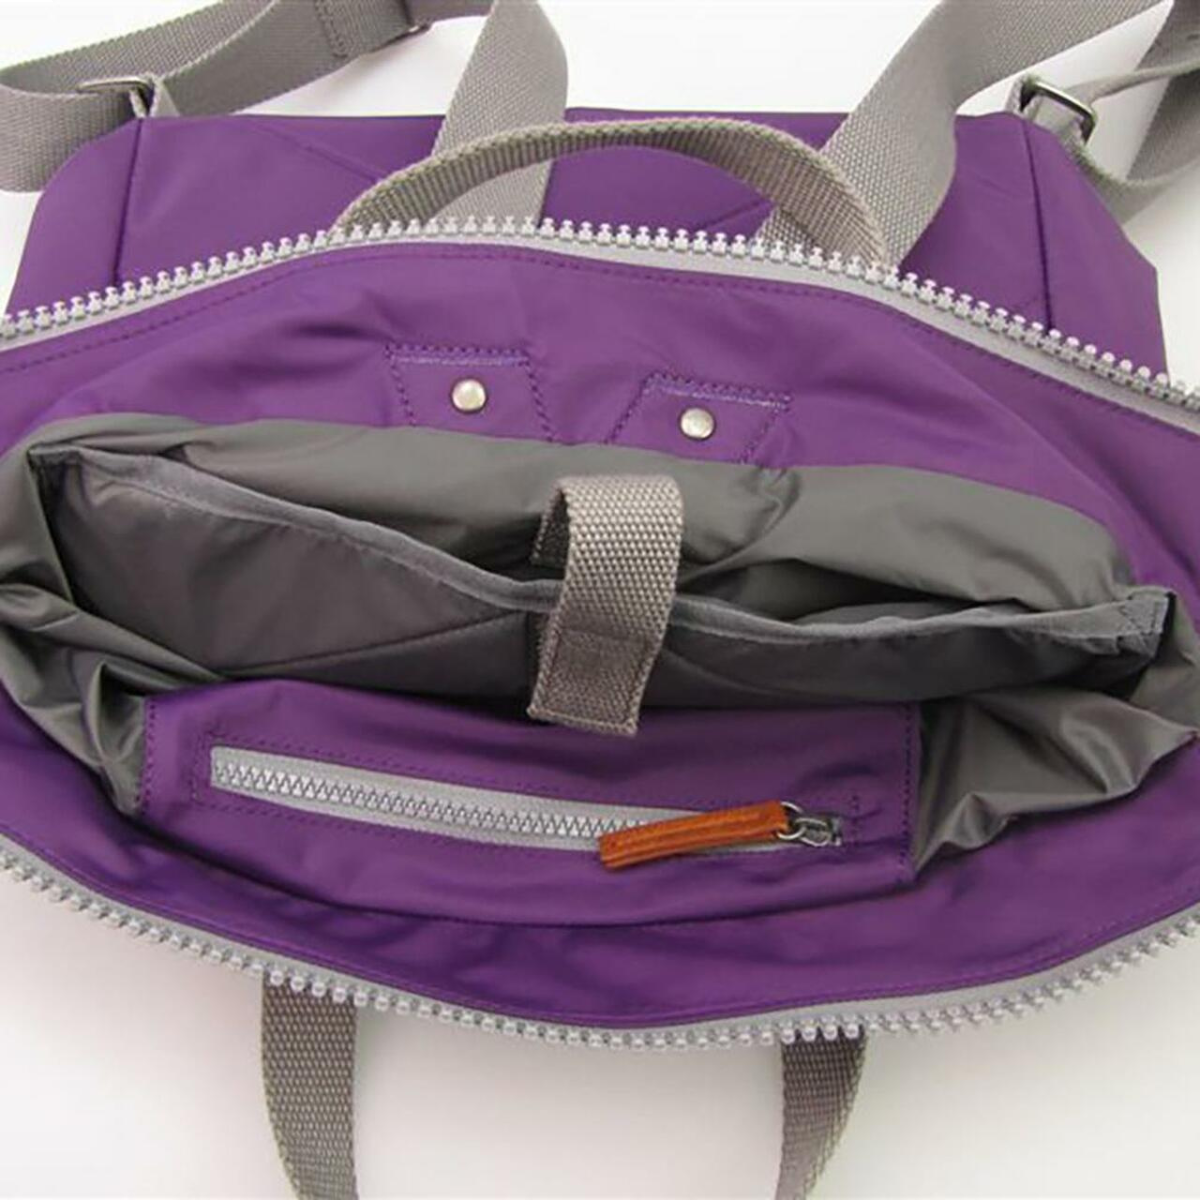 Roka Bantry C Medium Rucksack Bag Backpack in Purple inside view